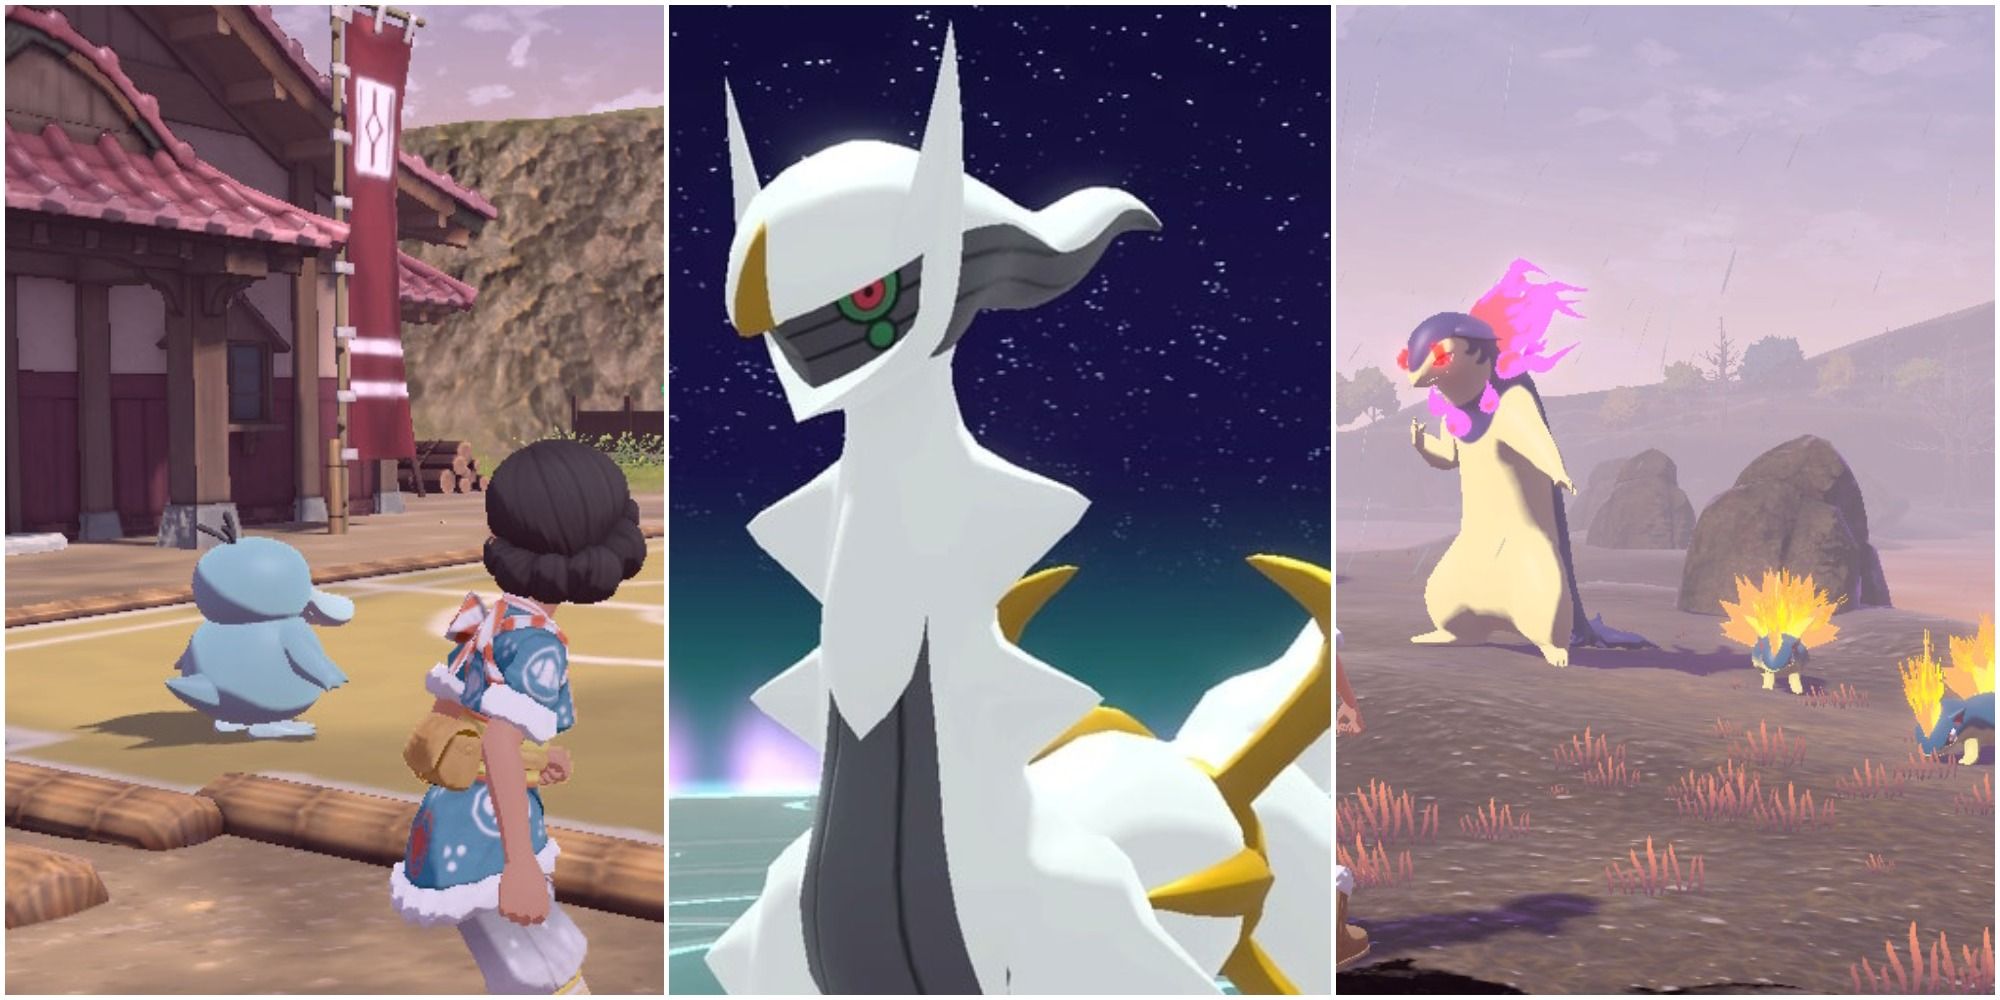 ◓ Pokémon Legends Arceus recebe nova atualização 'Daybreak